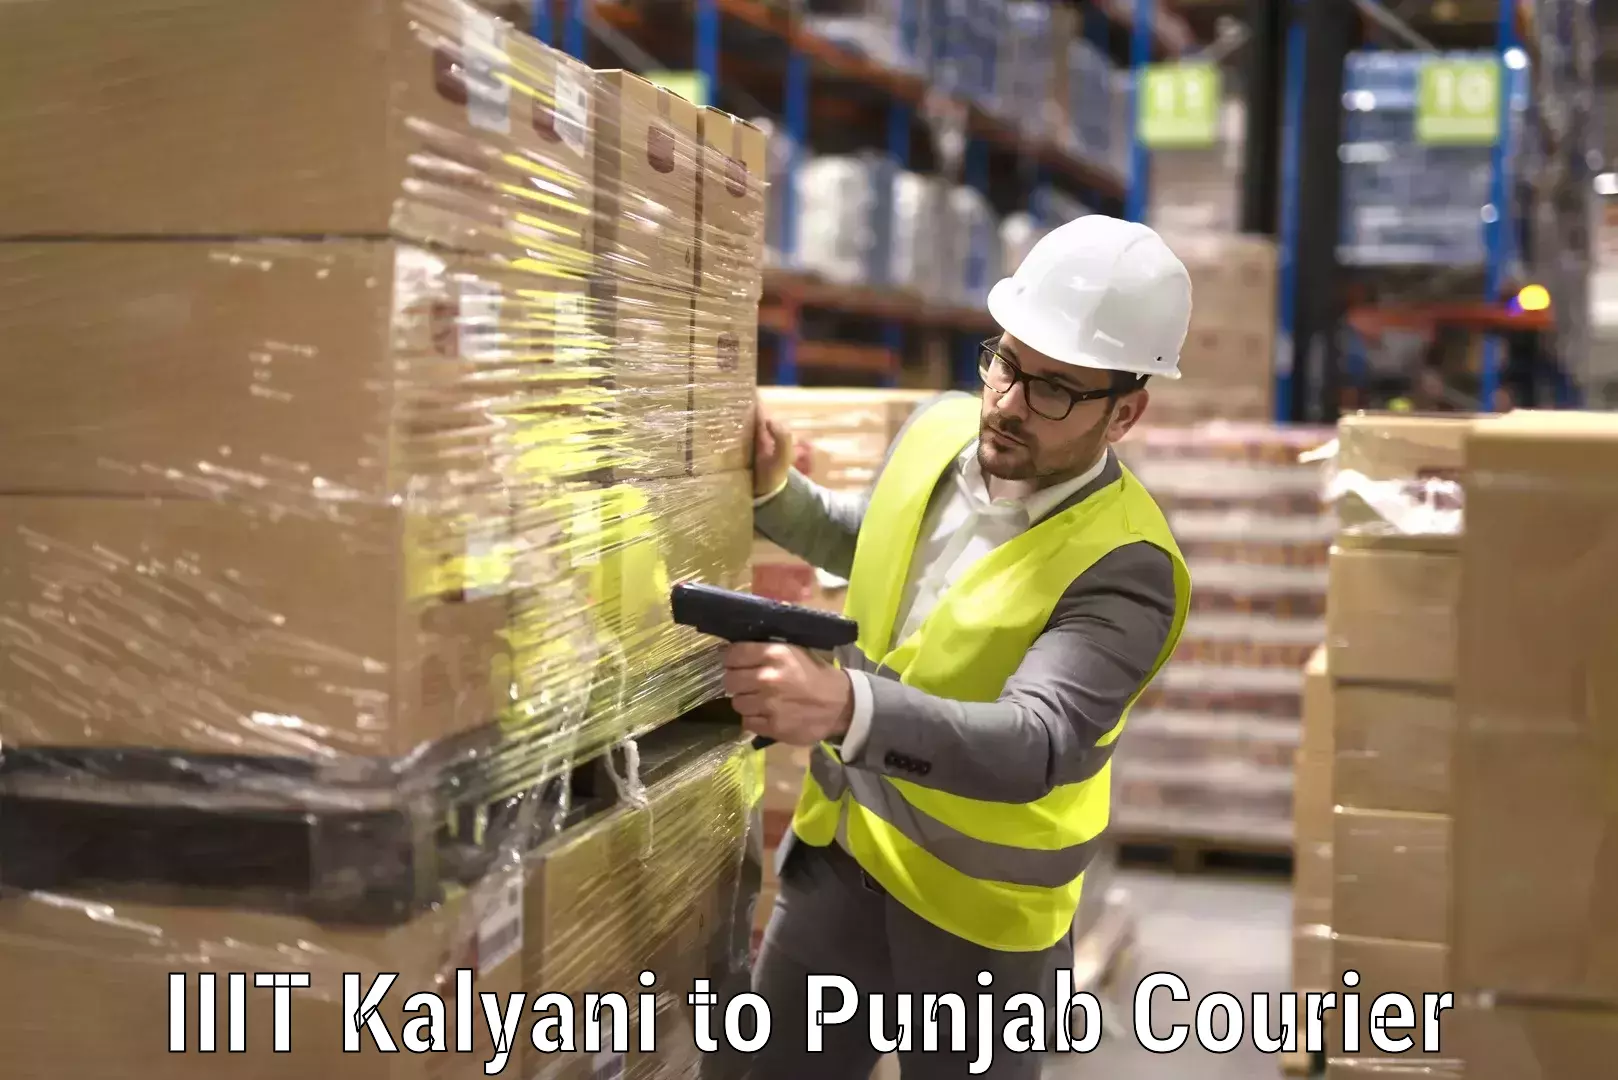 Furniture transport experts IIIT Kalyani to Punjab